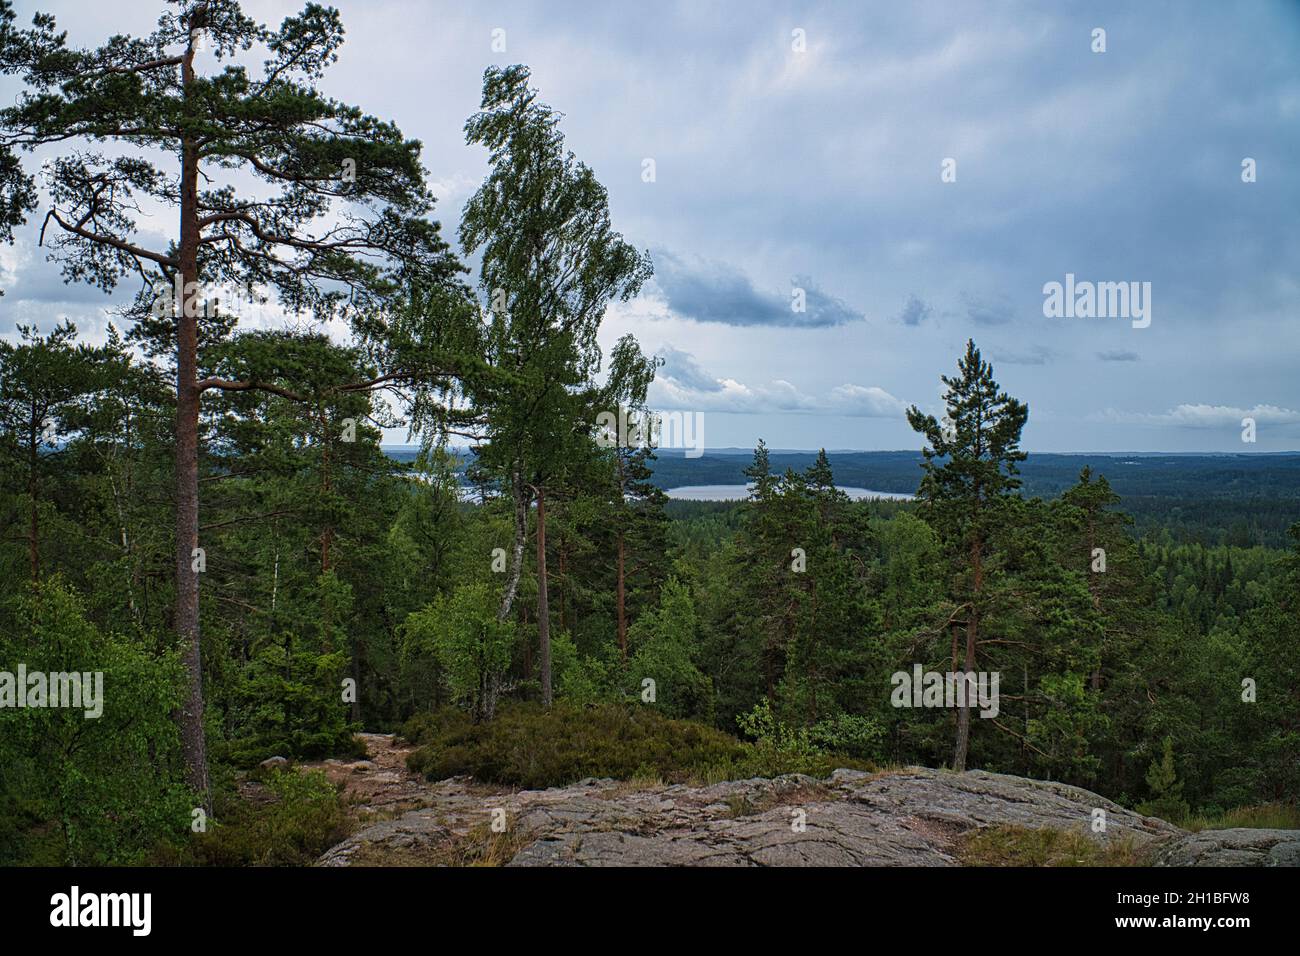 Die schwedische Landschaft. Kalter Fels und endlose Stille. Ein Land der Entspannung, Abenteuer und Erholung. Stockfoto